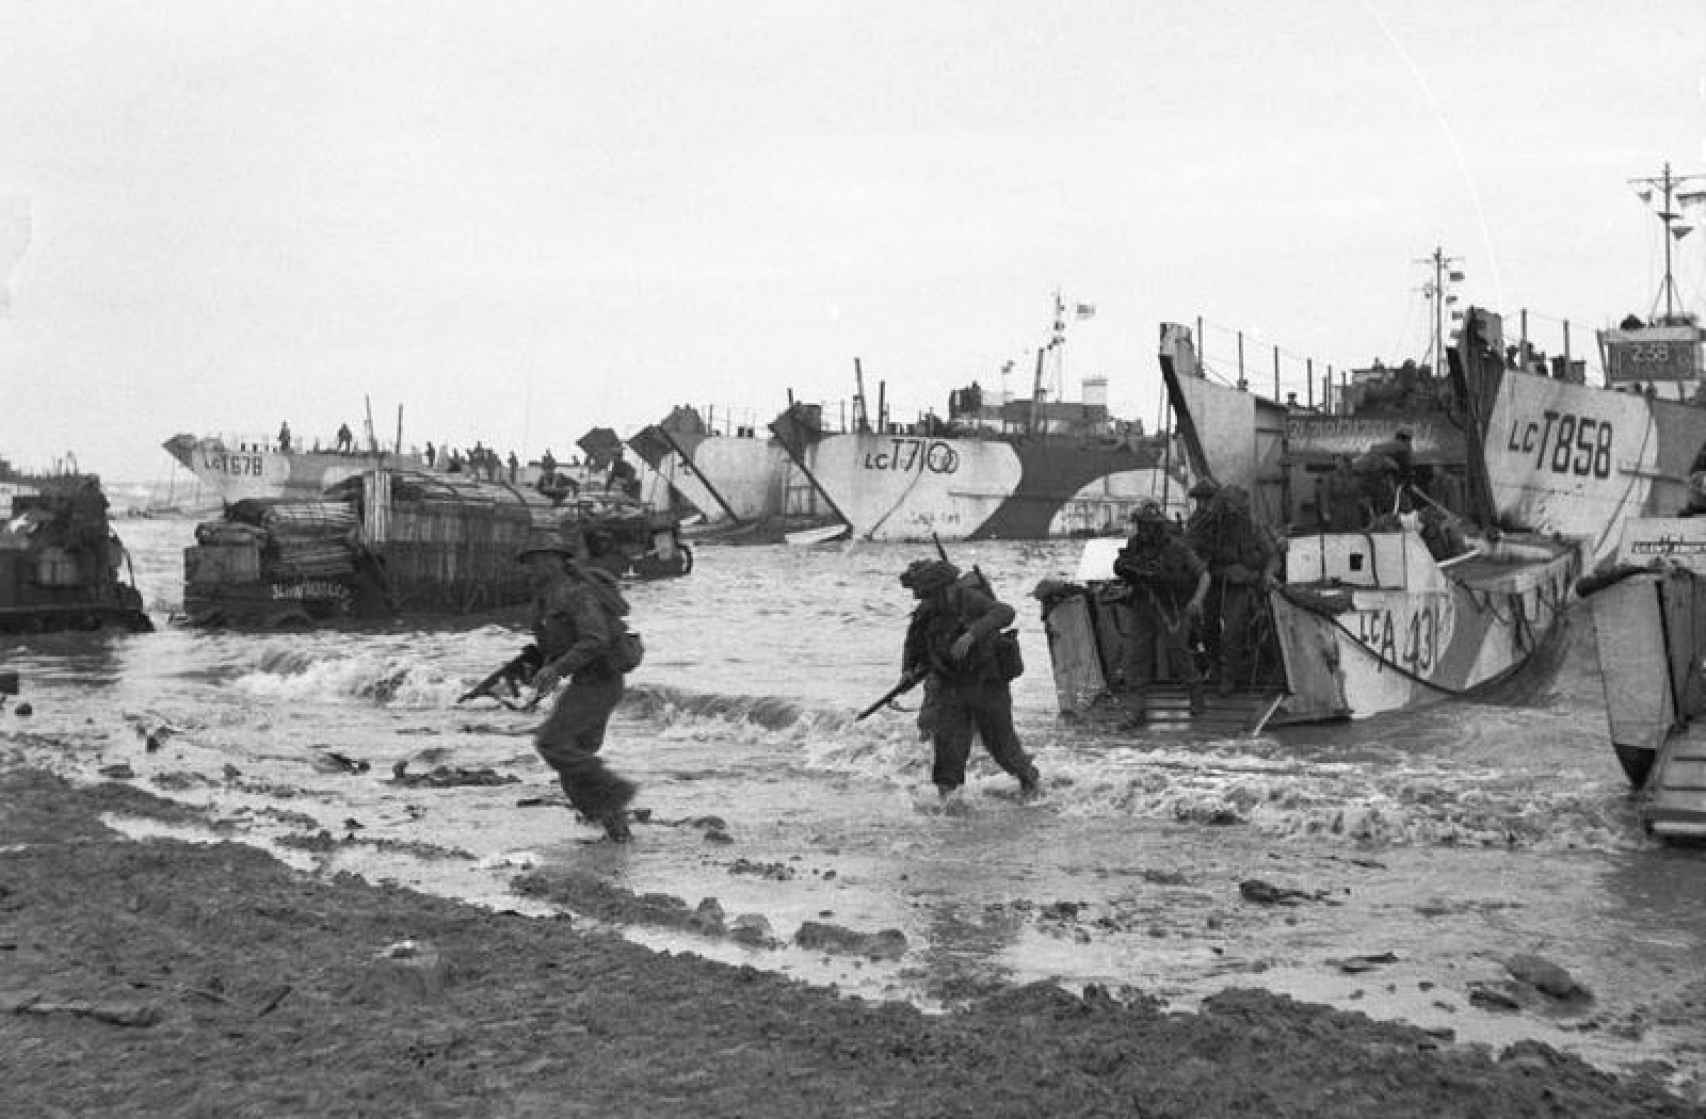 Soldados británicos desembarcando en la playa Gold.